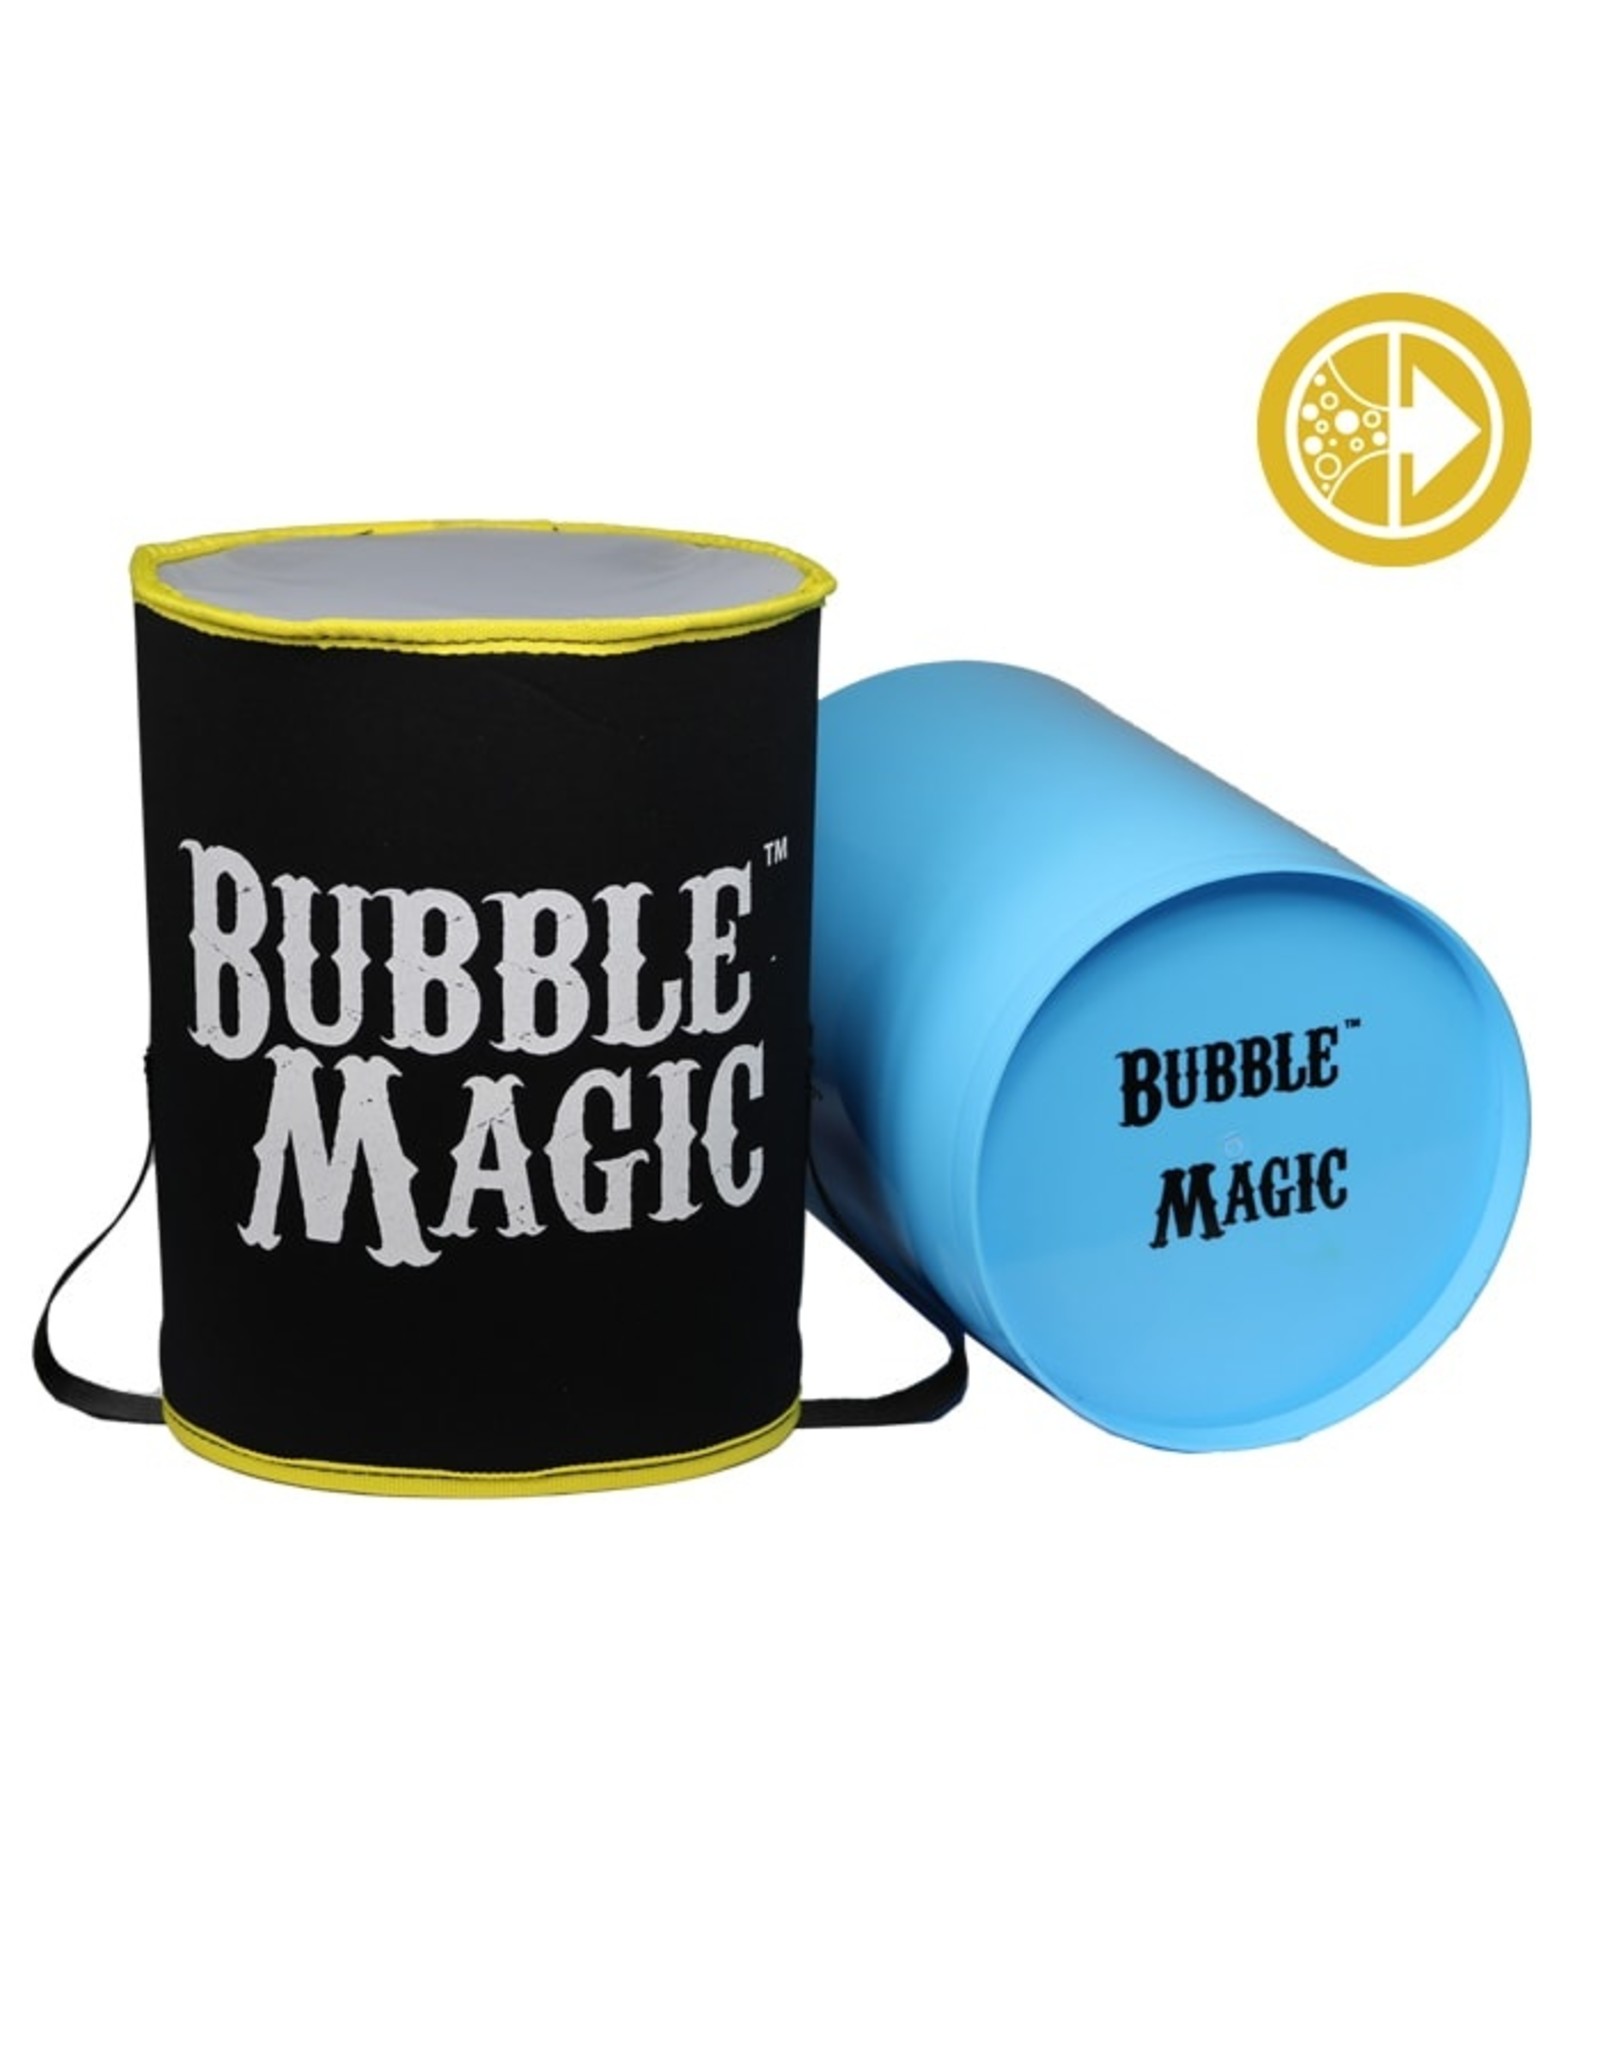 Bubble Magic Bubble Magic Extraction Shaker 120 Micron Bag & Bucket Kit